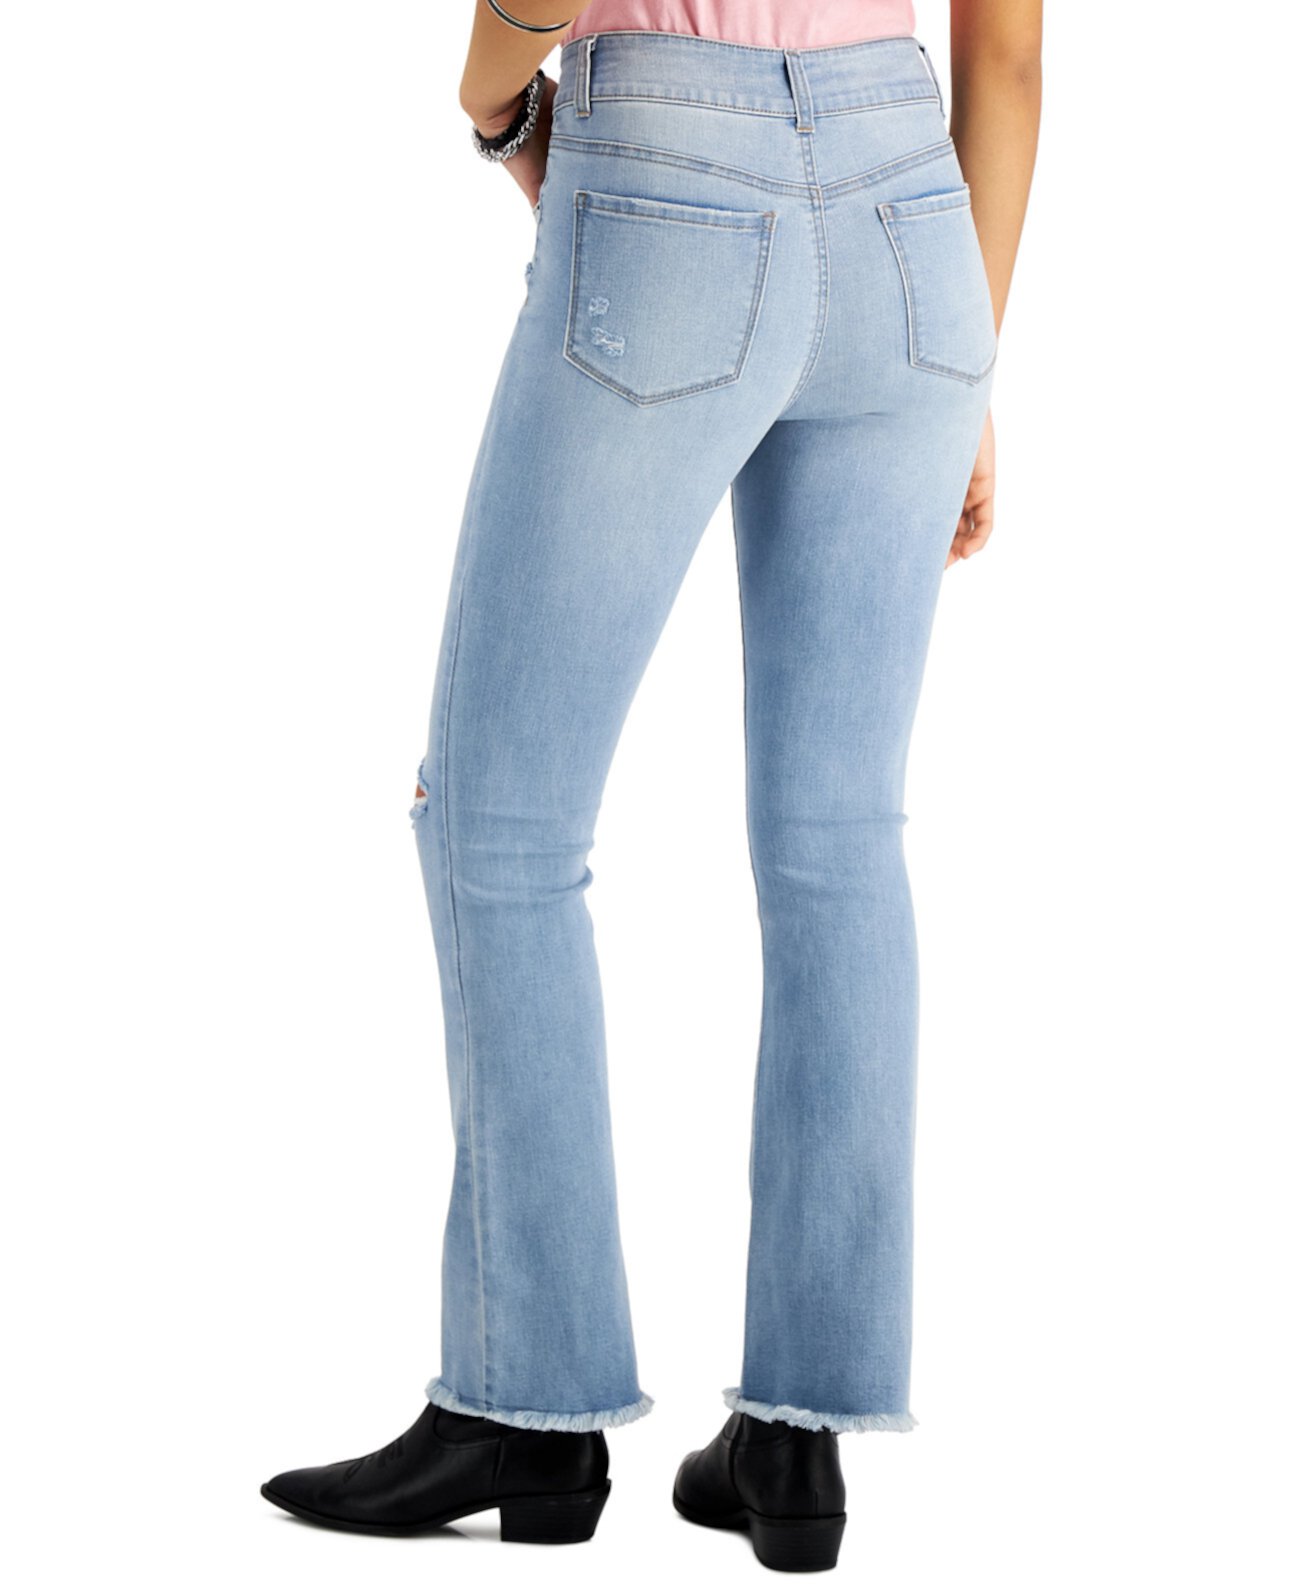 Рваные джинсы с высокой посадкой для юниоров Vanilla Star